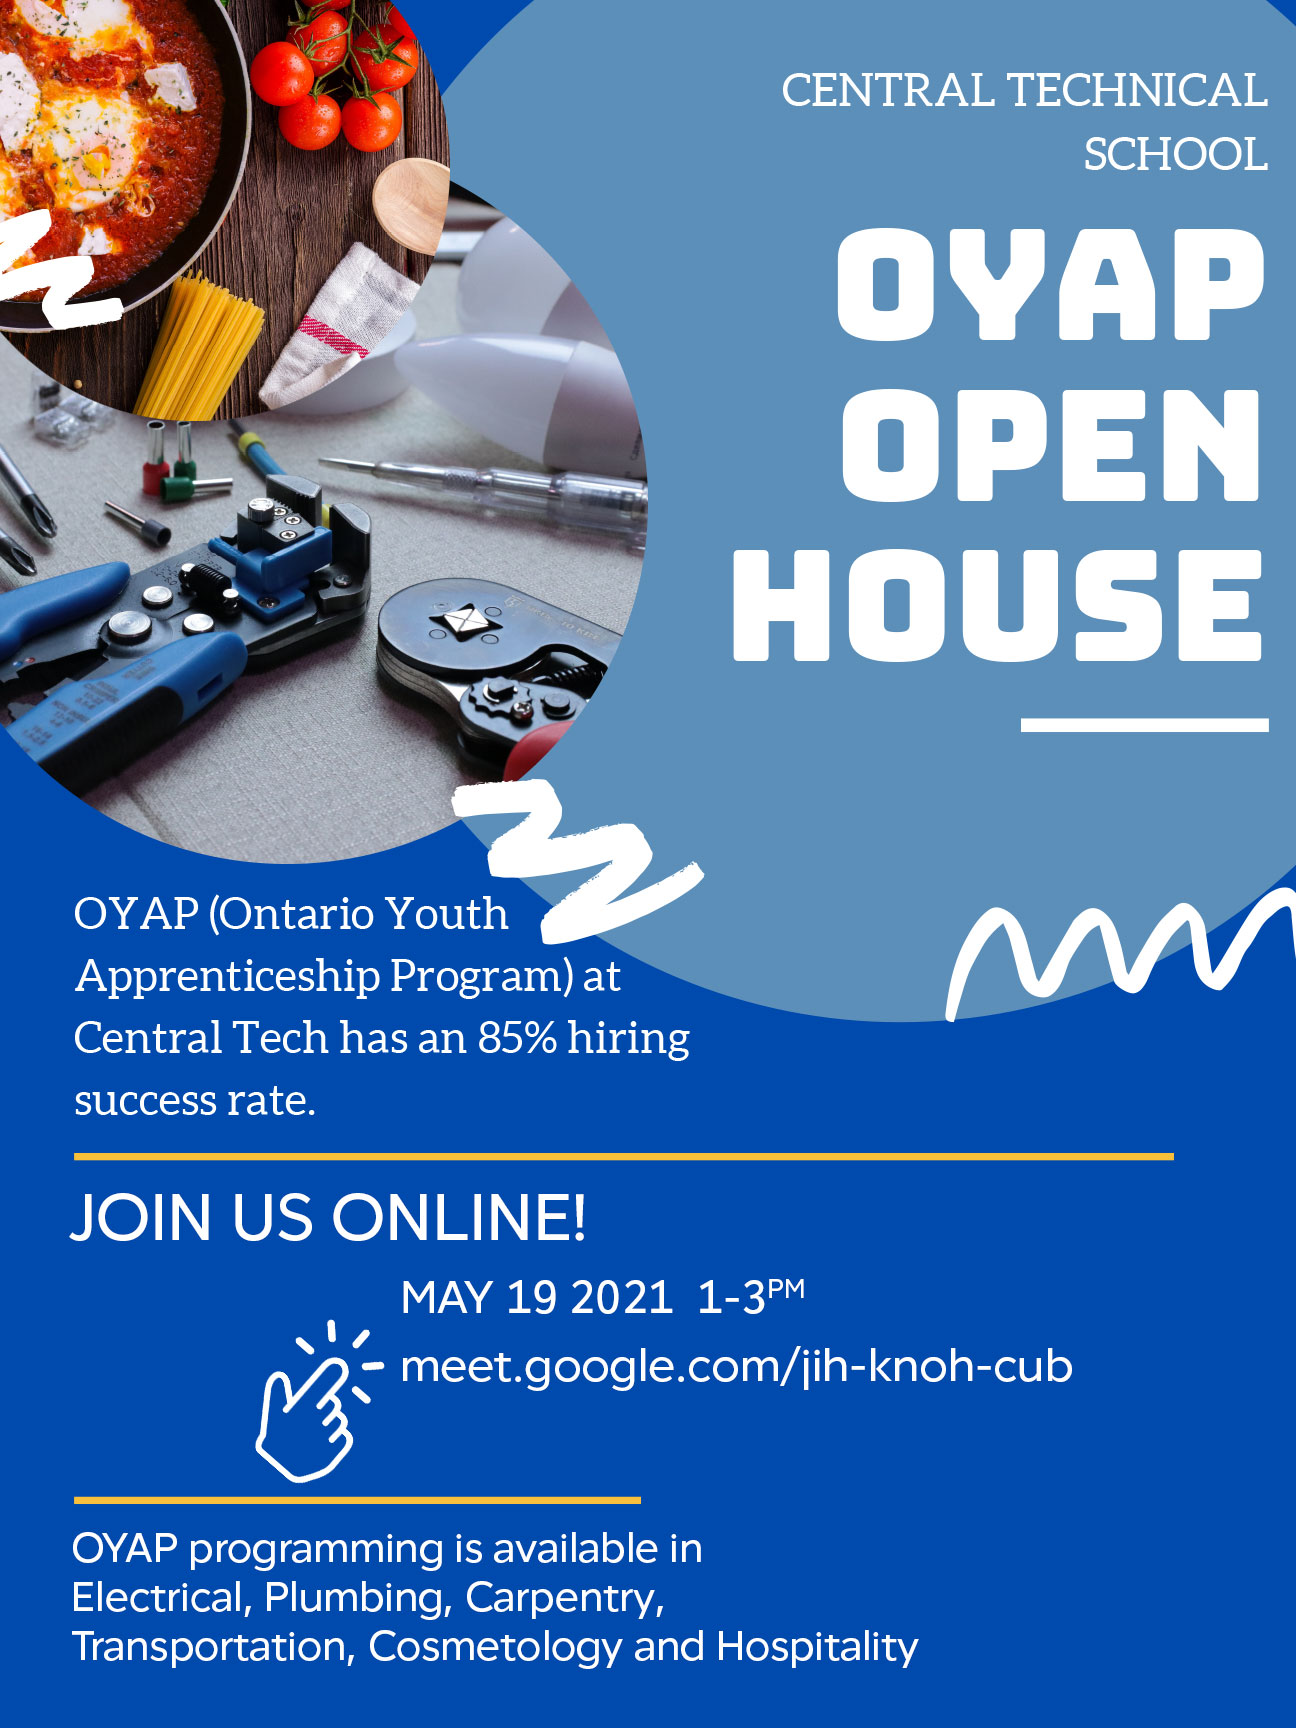 Oyap Programs